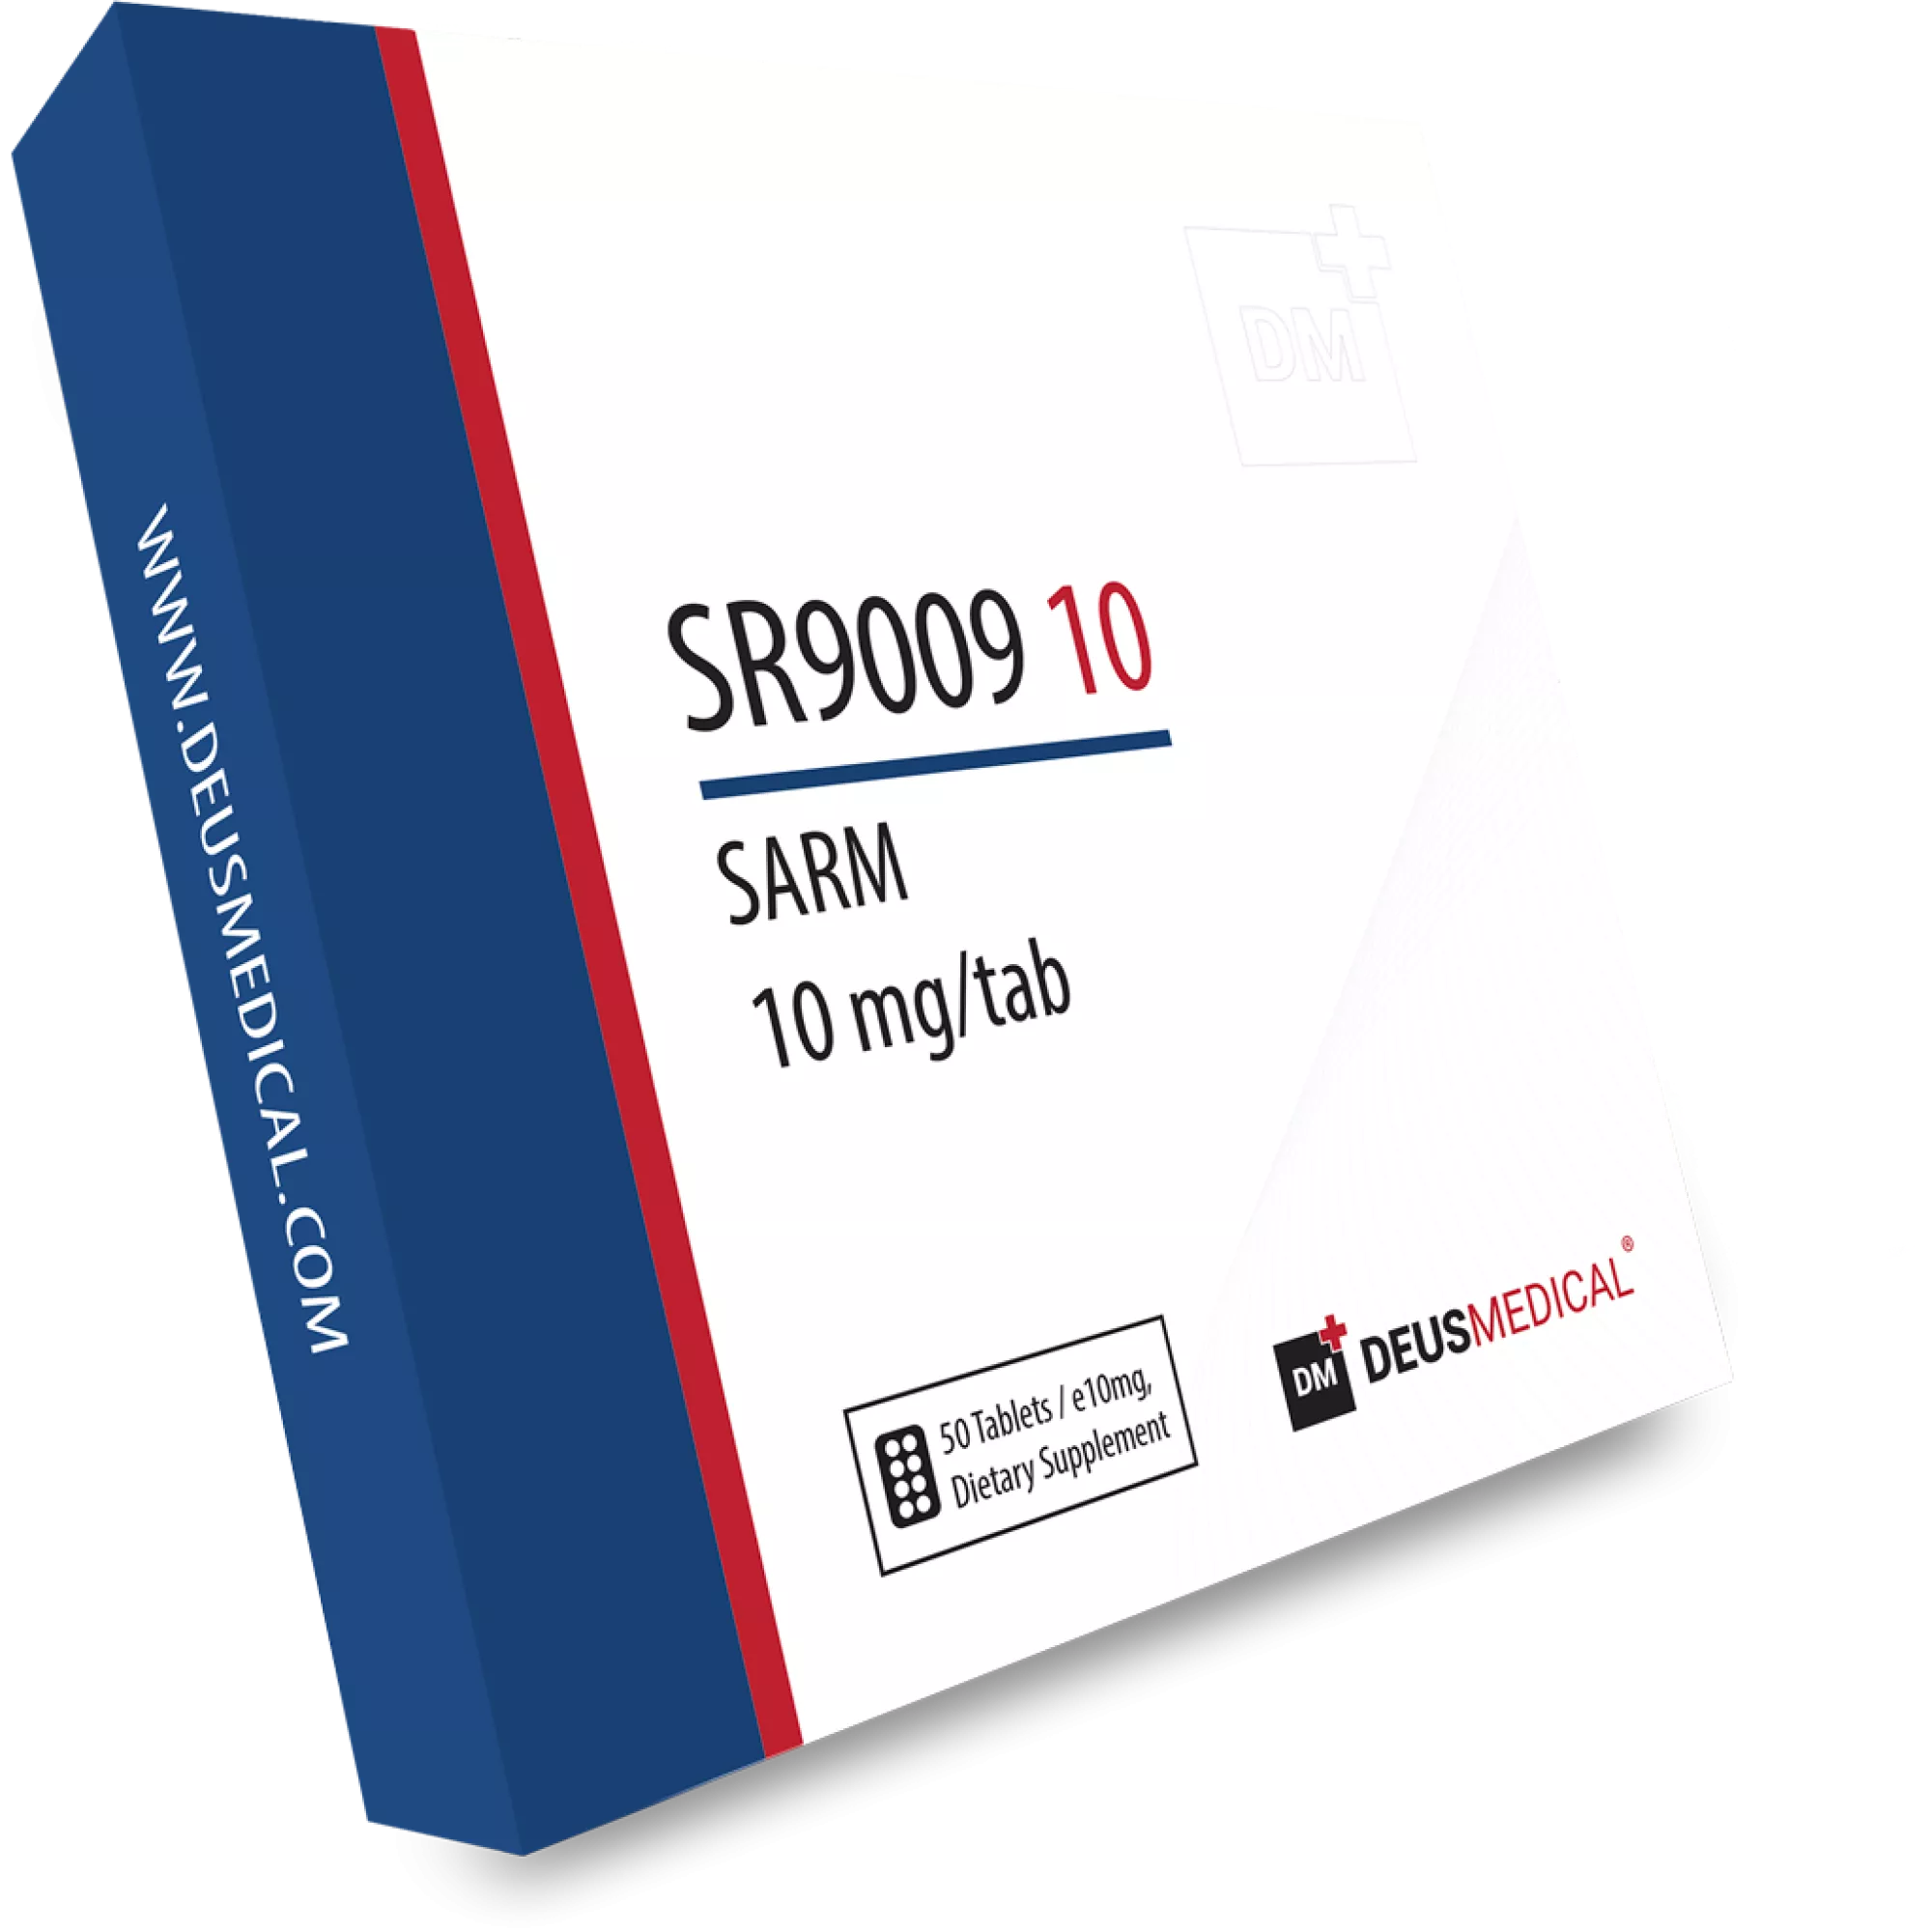 SR9009 10 (Stenabolisch), Deus Medical, Kaufen Sie Steroide Online - www.deuspower.shop